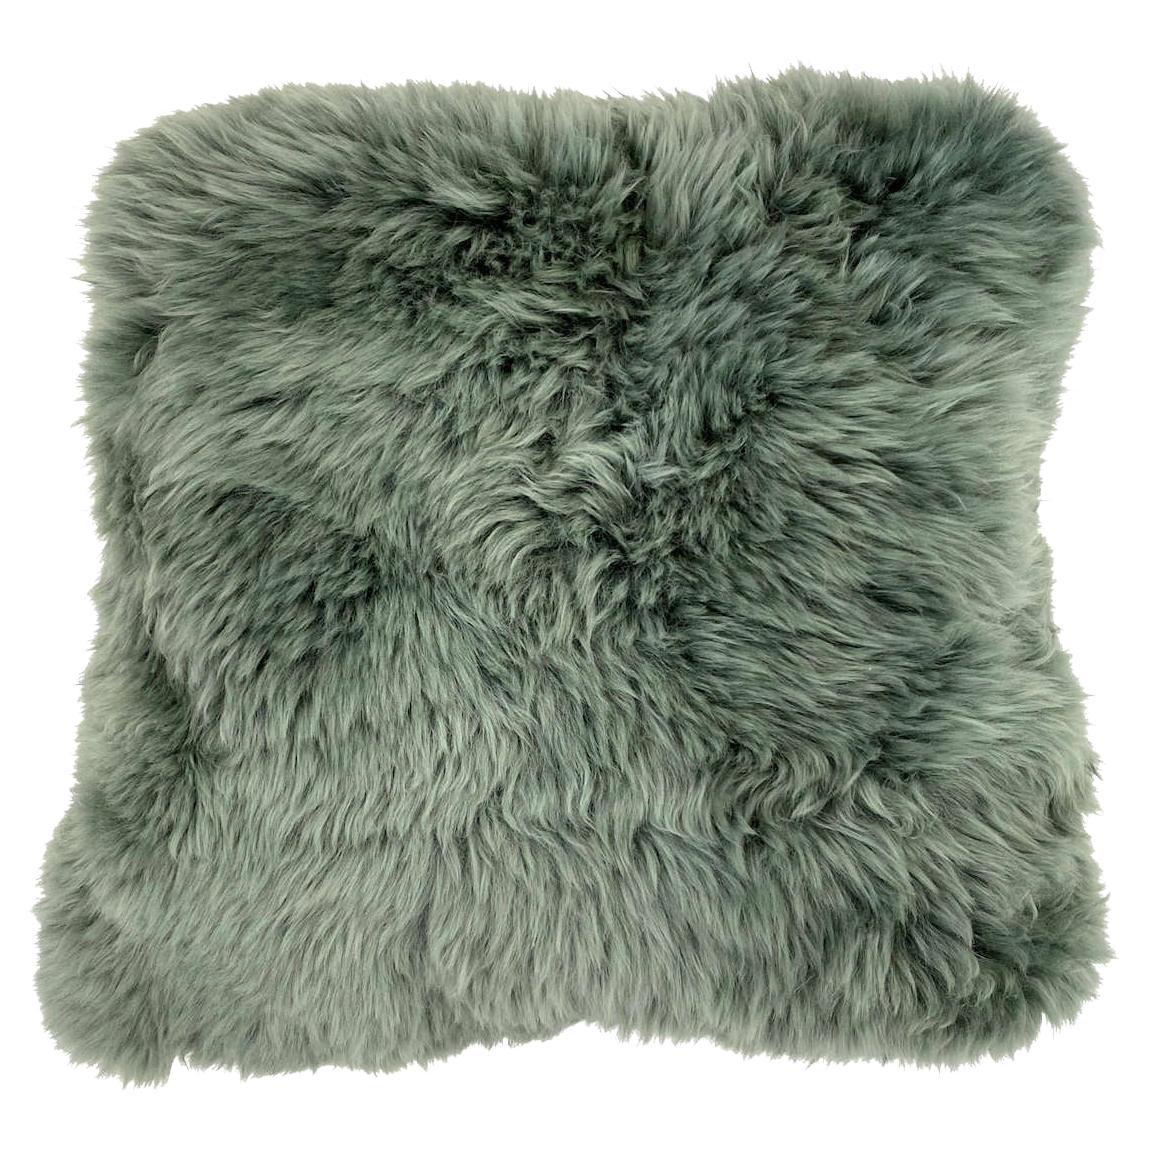 Green Fluffy Pillow Sheepskin -  Eucalyptus 18x18" 